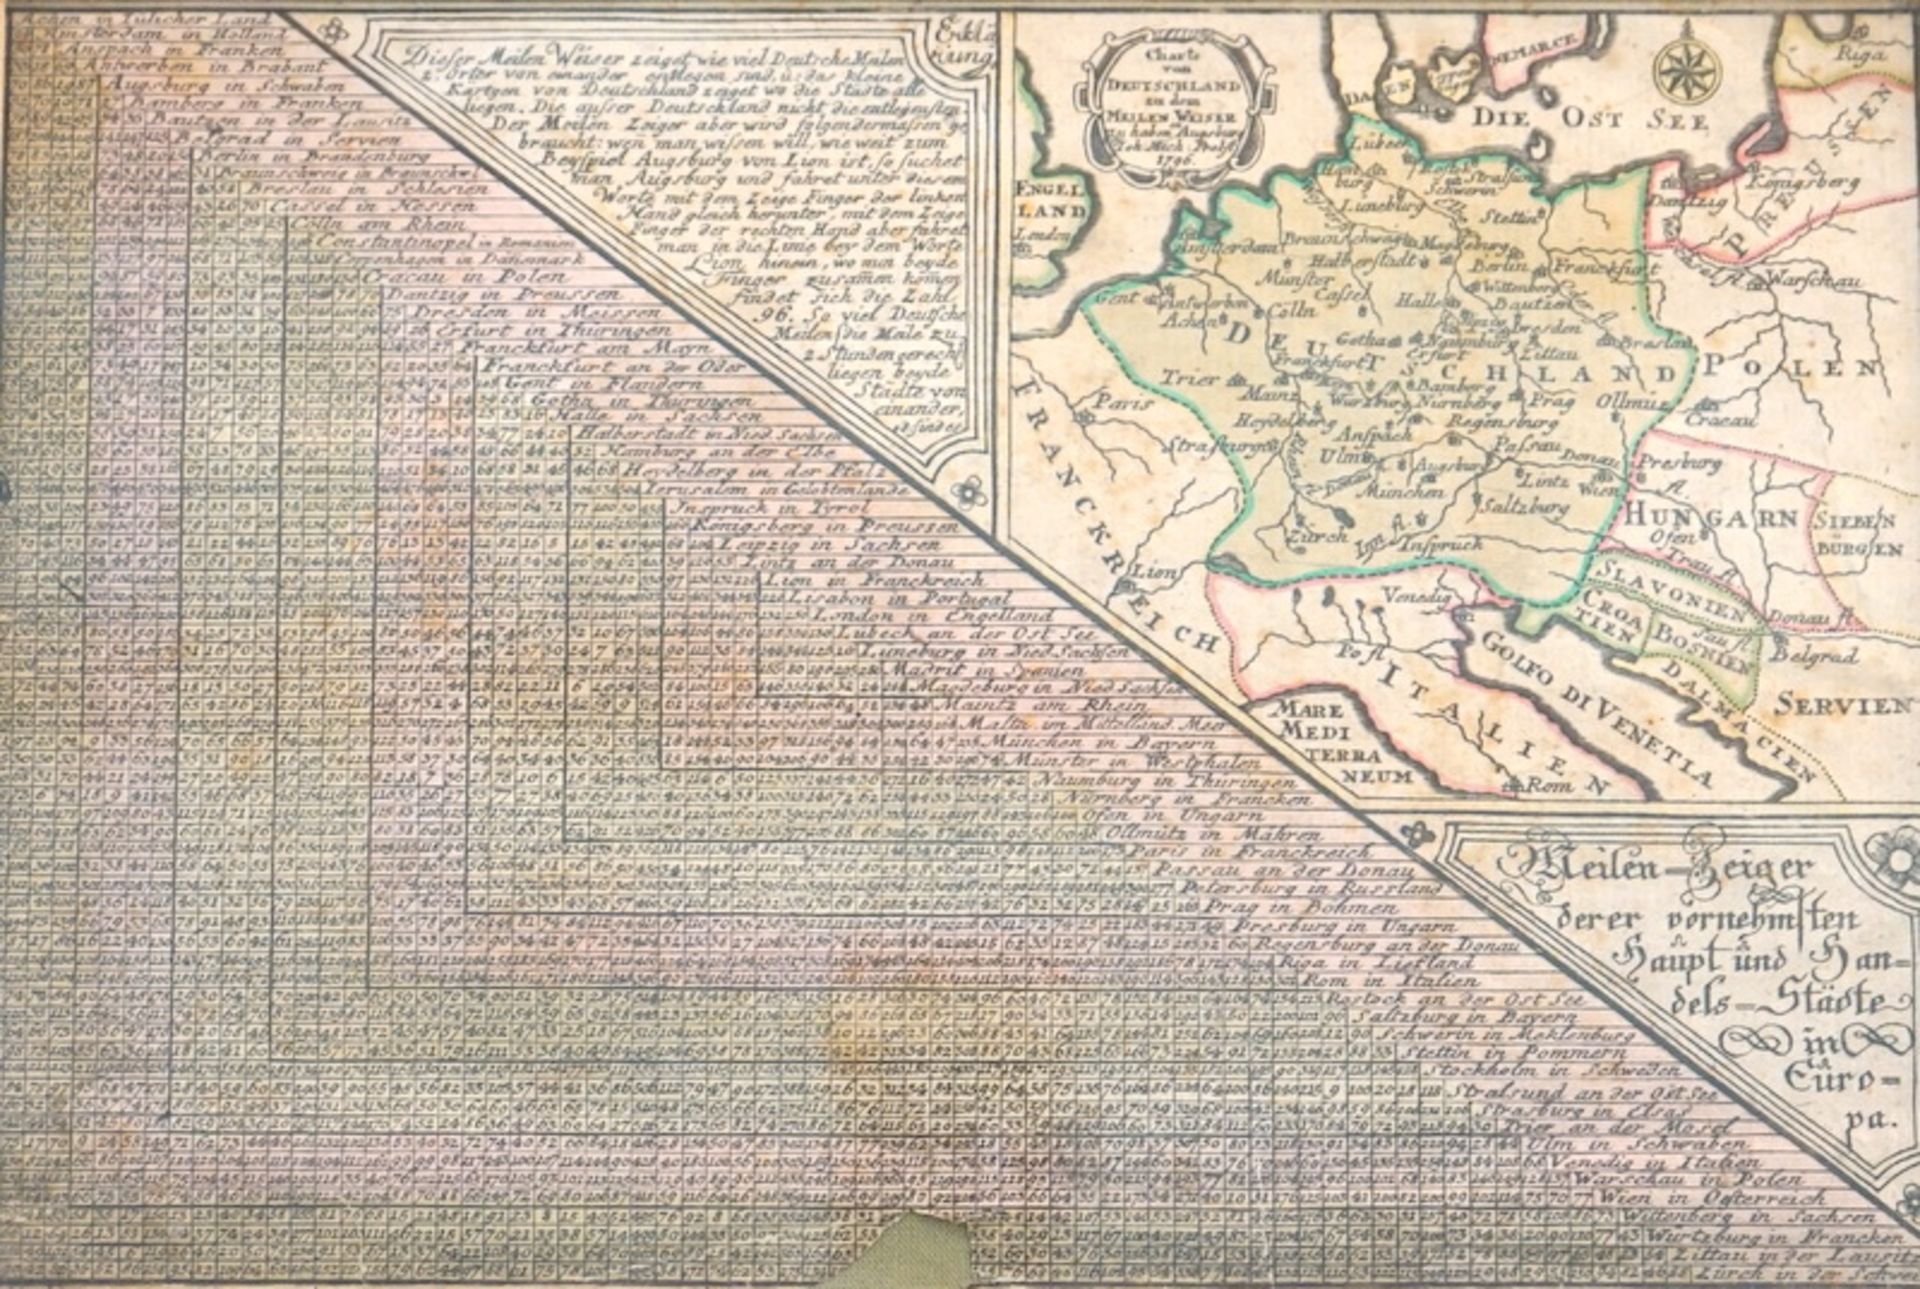 Probst, Johann Michael: "Meilen-Zeiger derer vornehmsten ..Städte in Europa, 1796